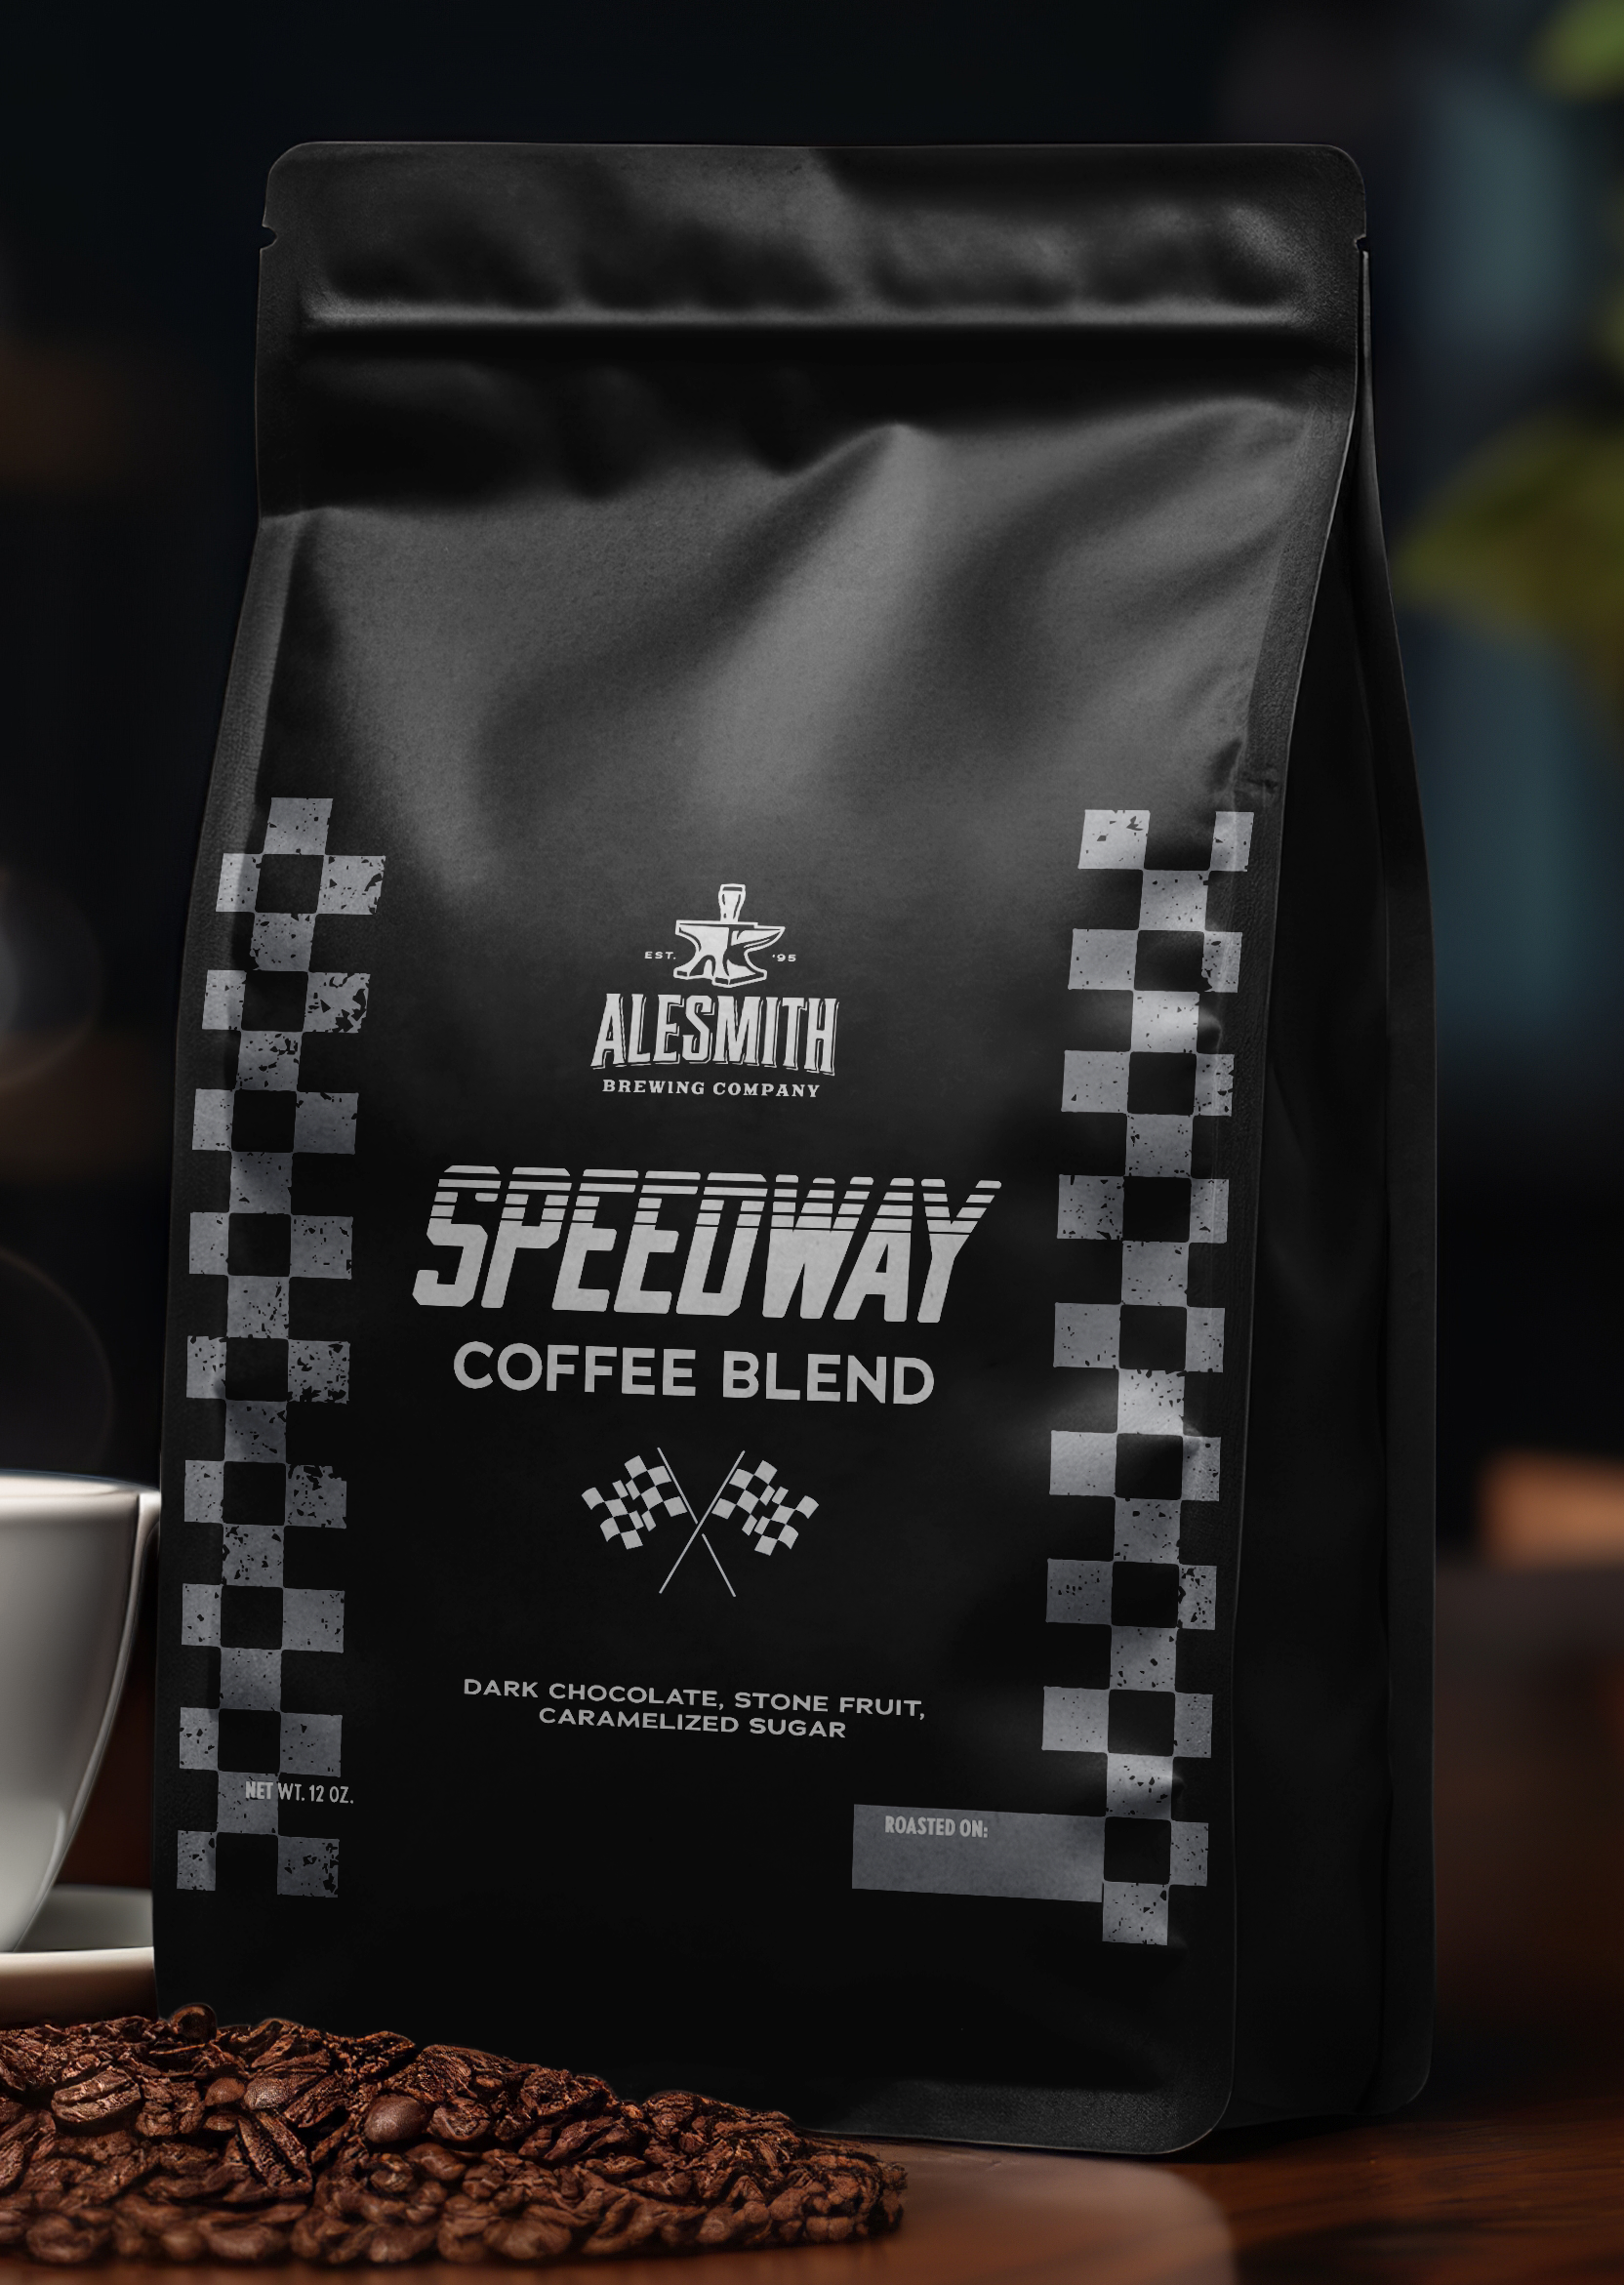 Speedway Coffee Blend